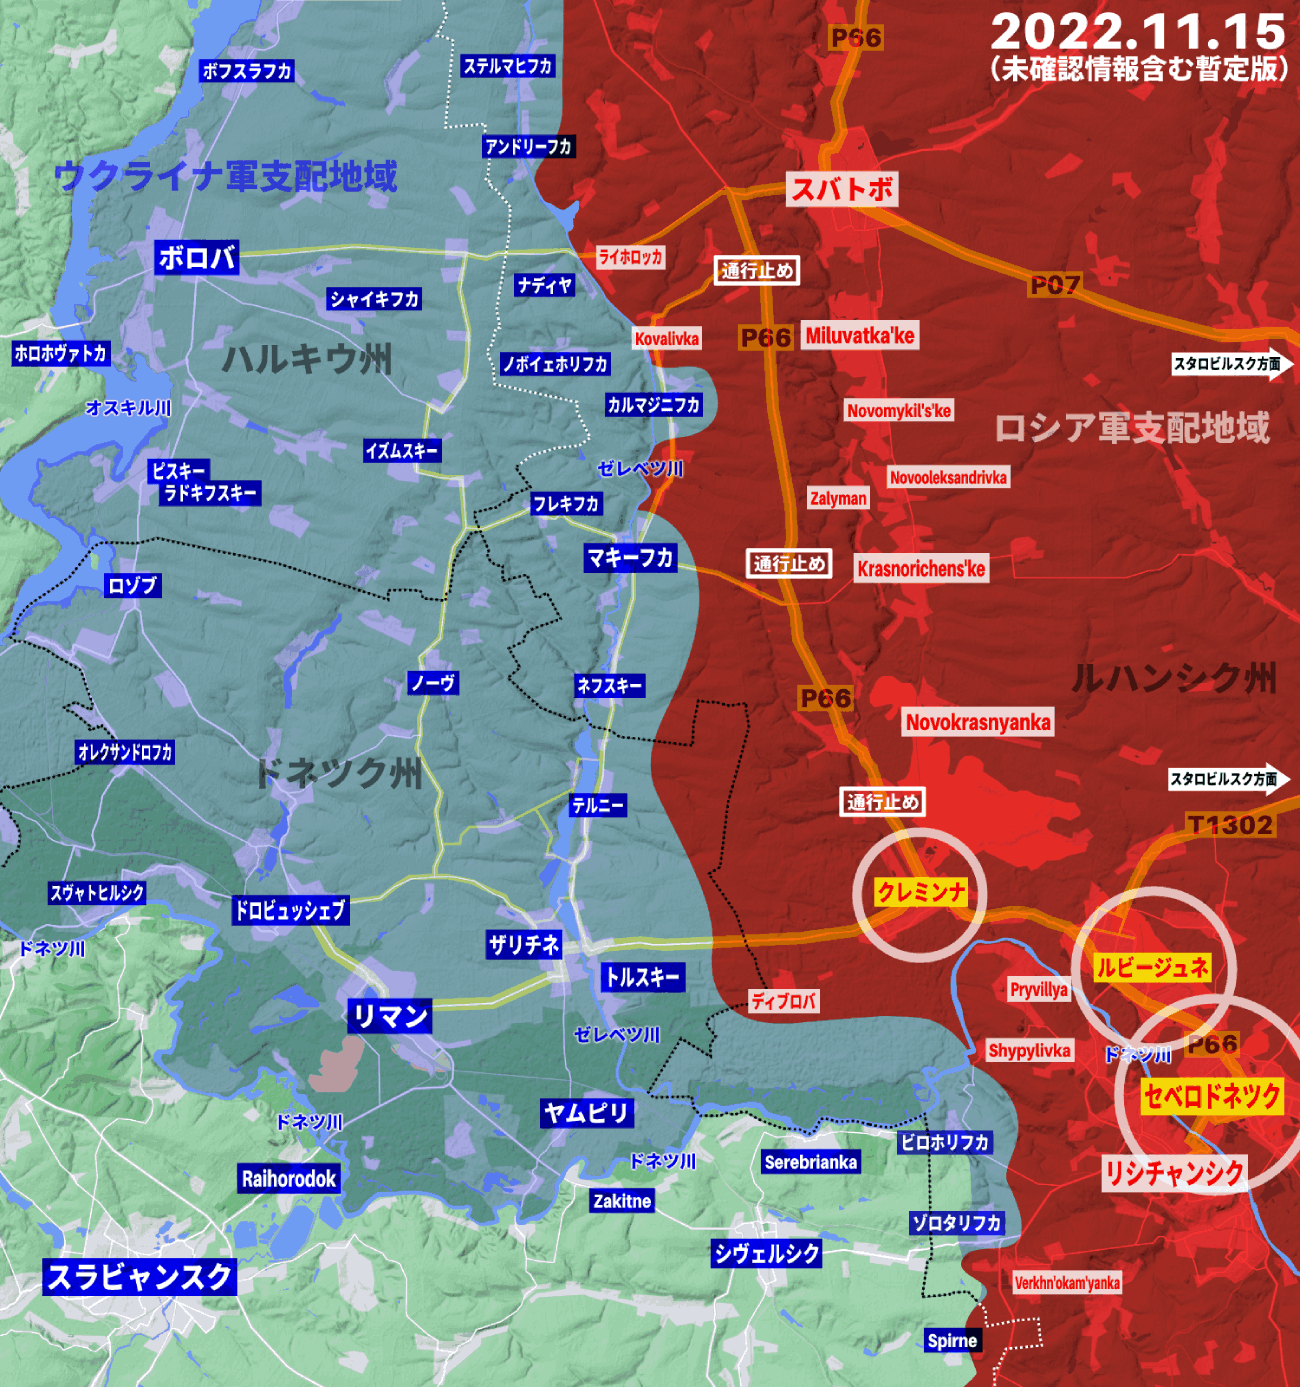 ロシア軍、セベロドネツク、ルビージュネ、クレミンナの住民避難を計画中